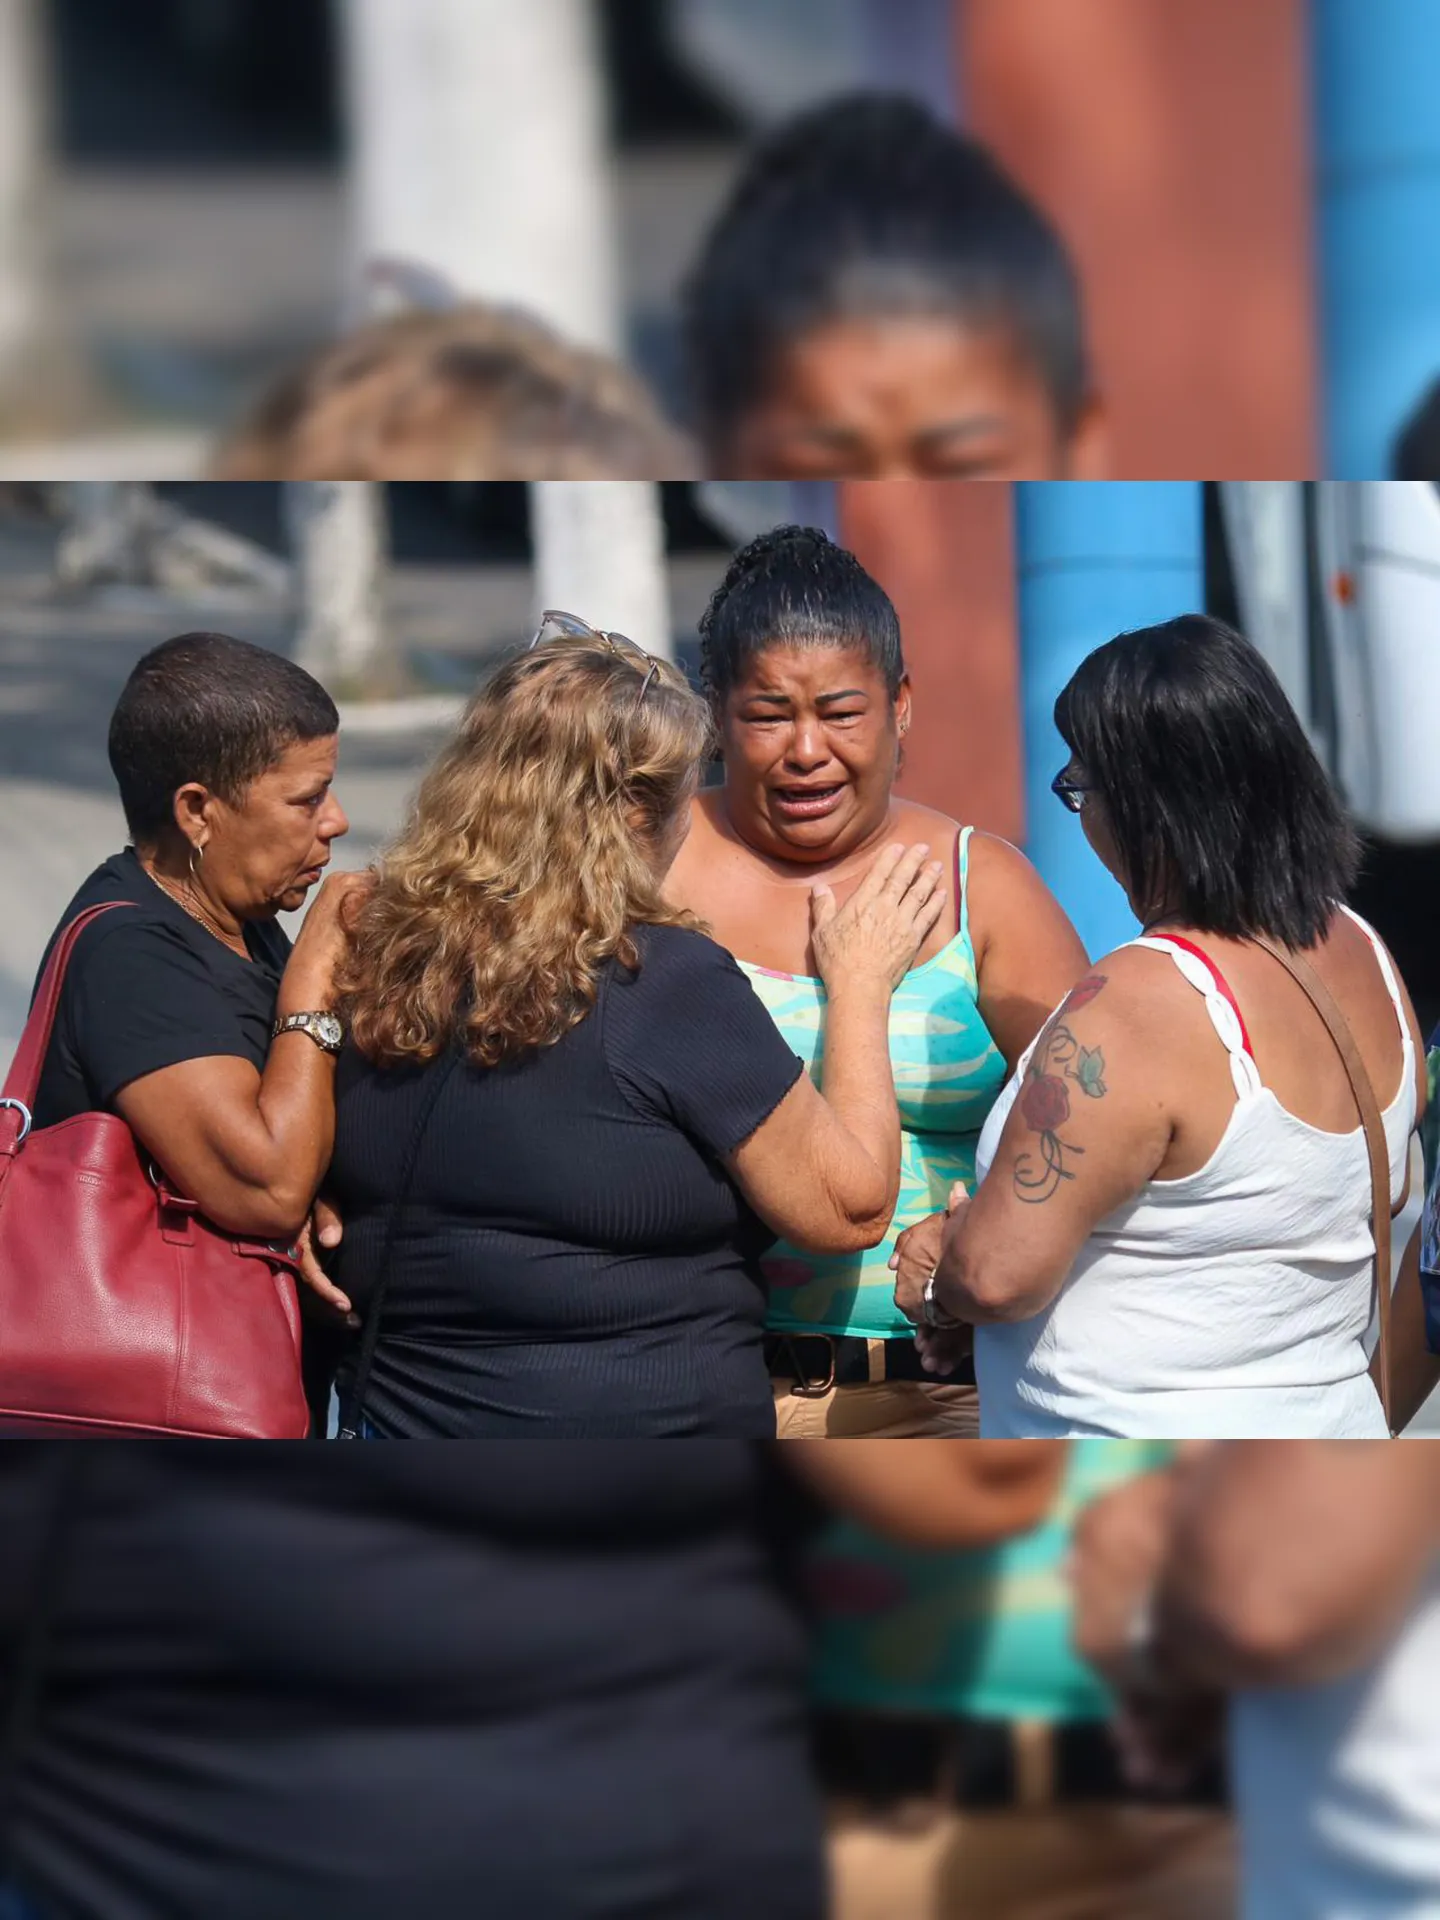 A mãe da jovem, Lucimara Dias, chegou no local por volta das 10h. Ela foi amparada por familiares